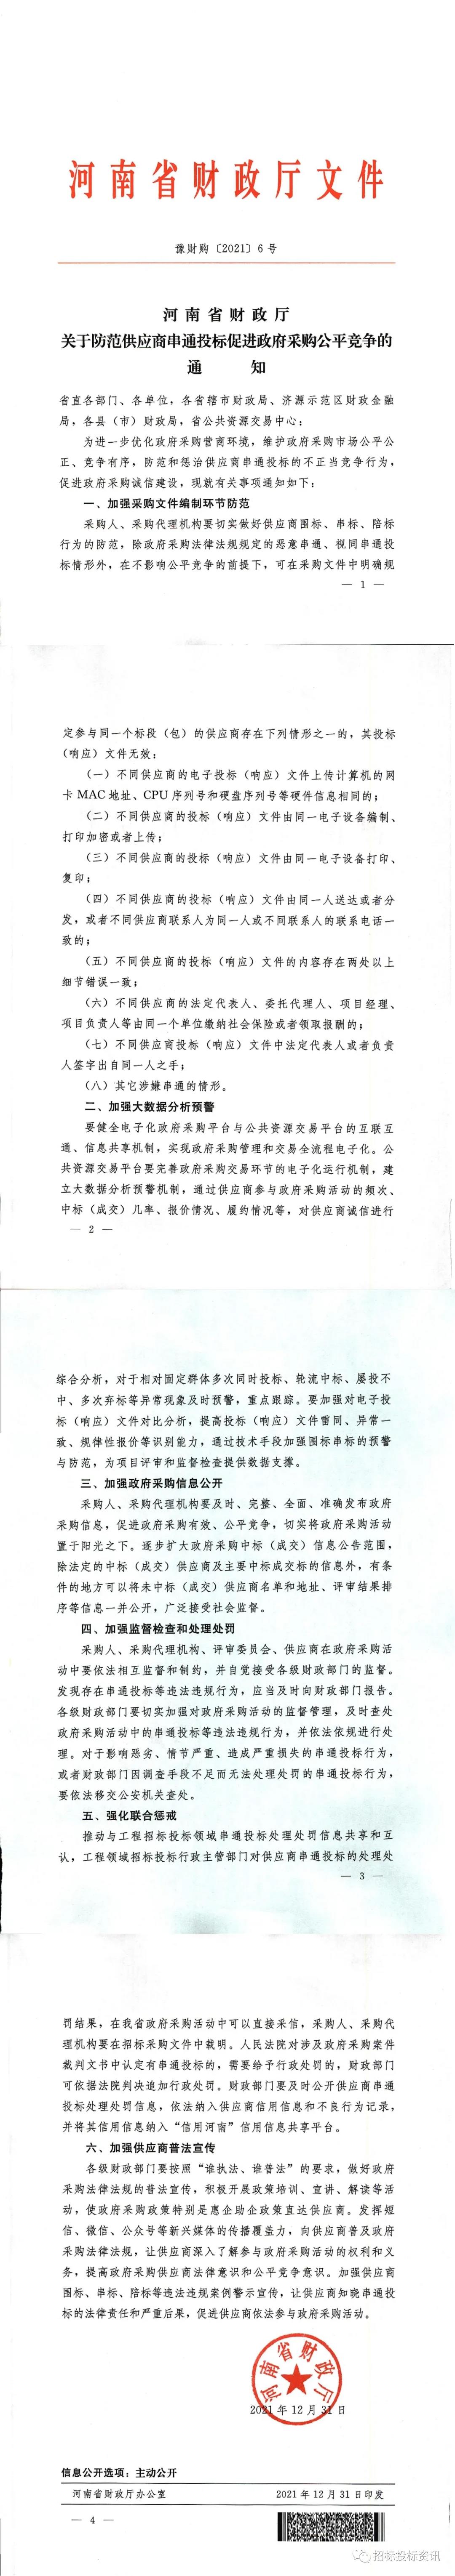 河南省财政厅关于防范供应商串通投标促进政府采购公平竞争的通知